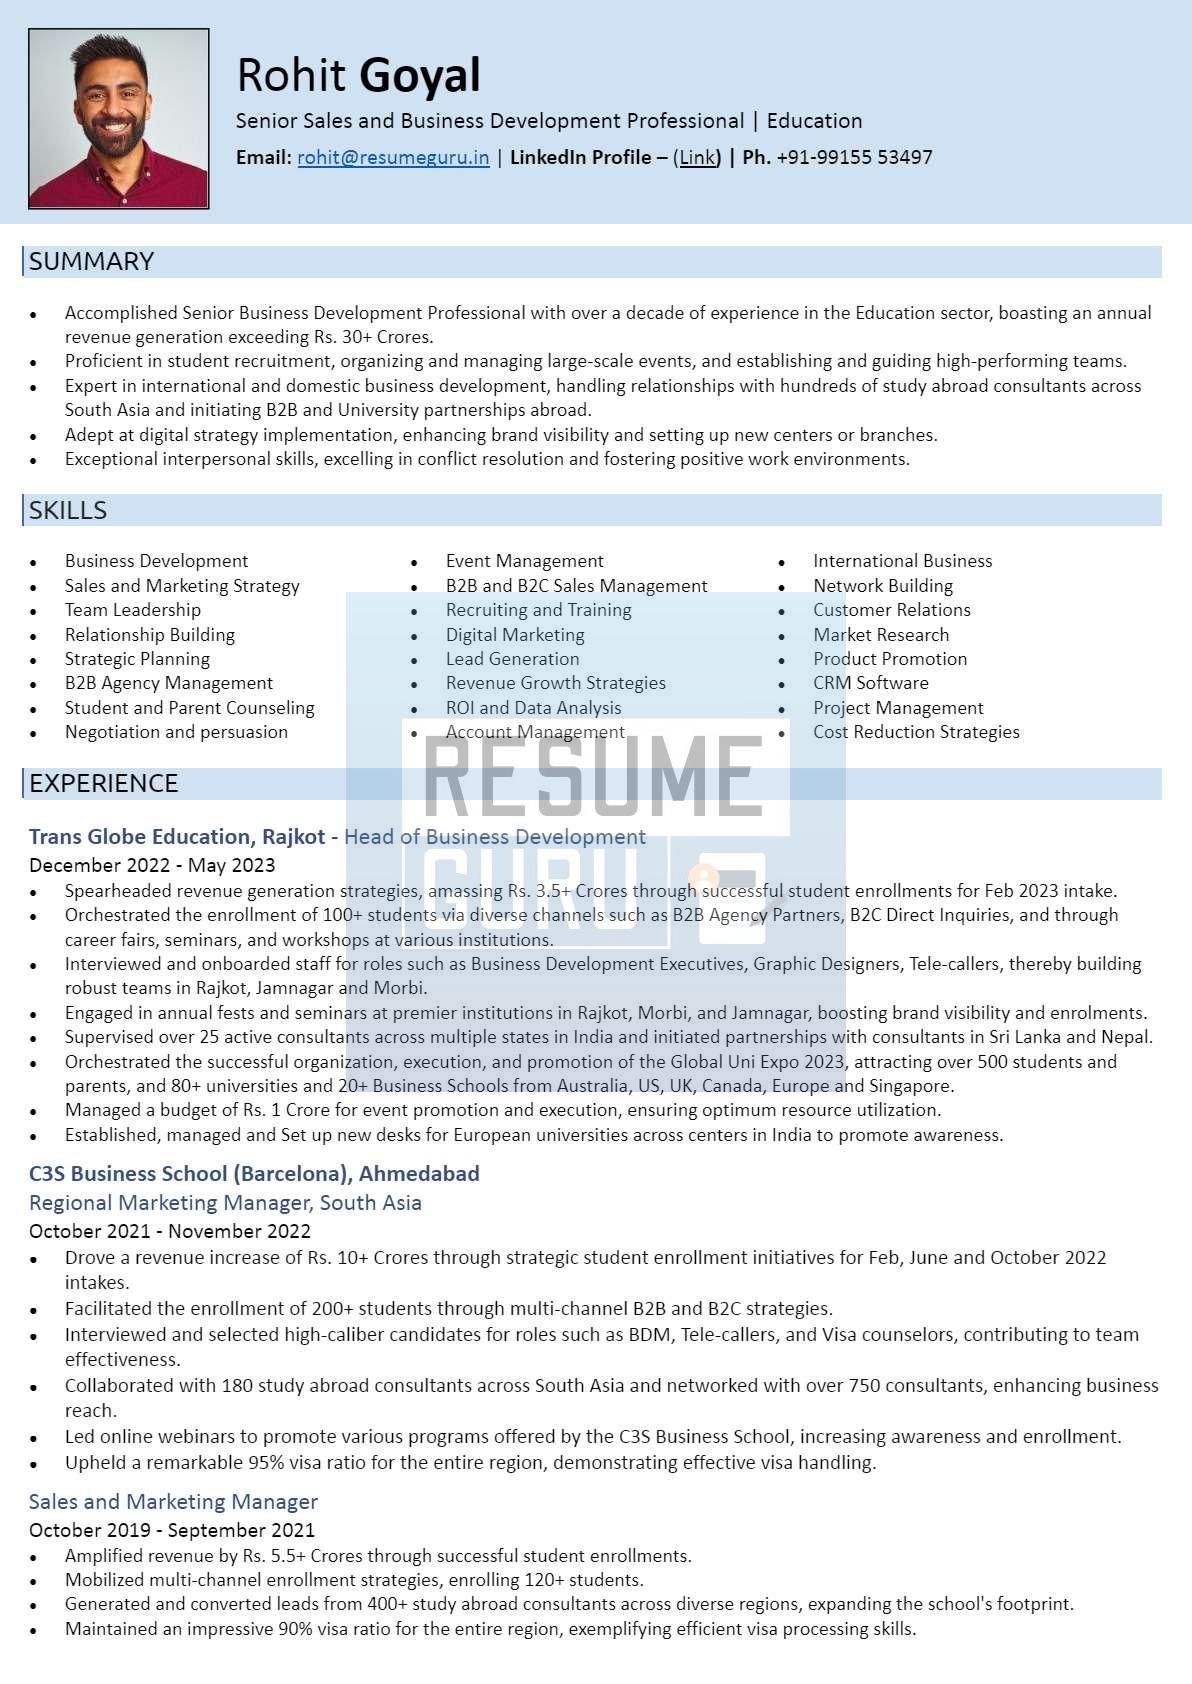 Senior-Level Business Development International Resume Sample_1